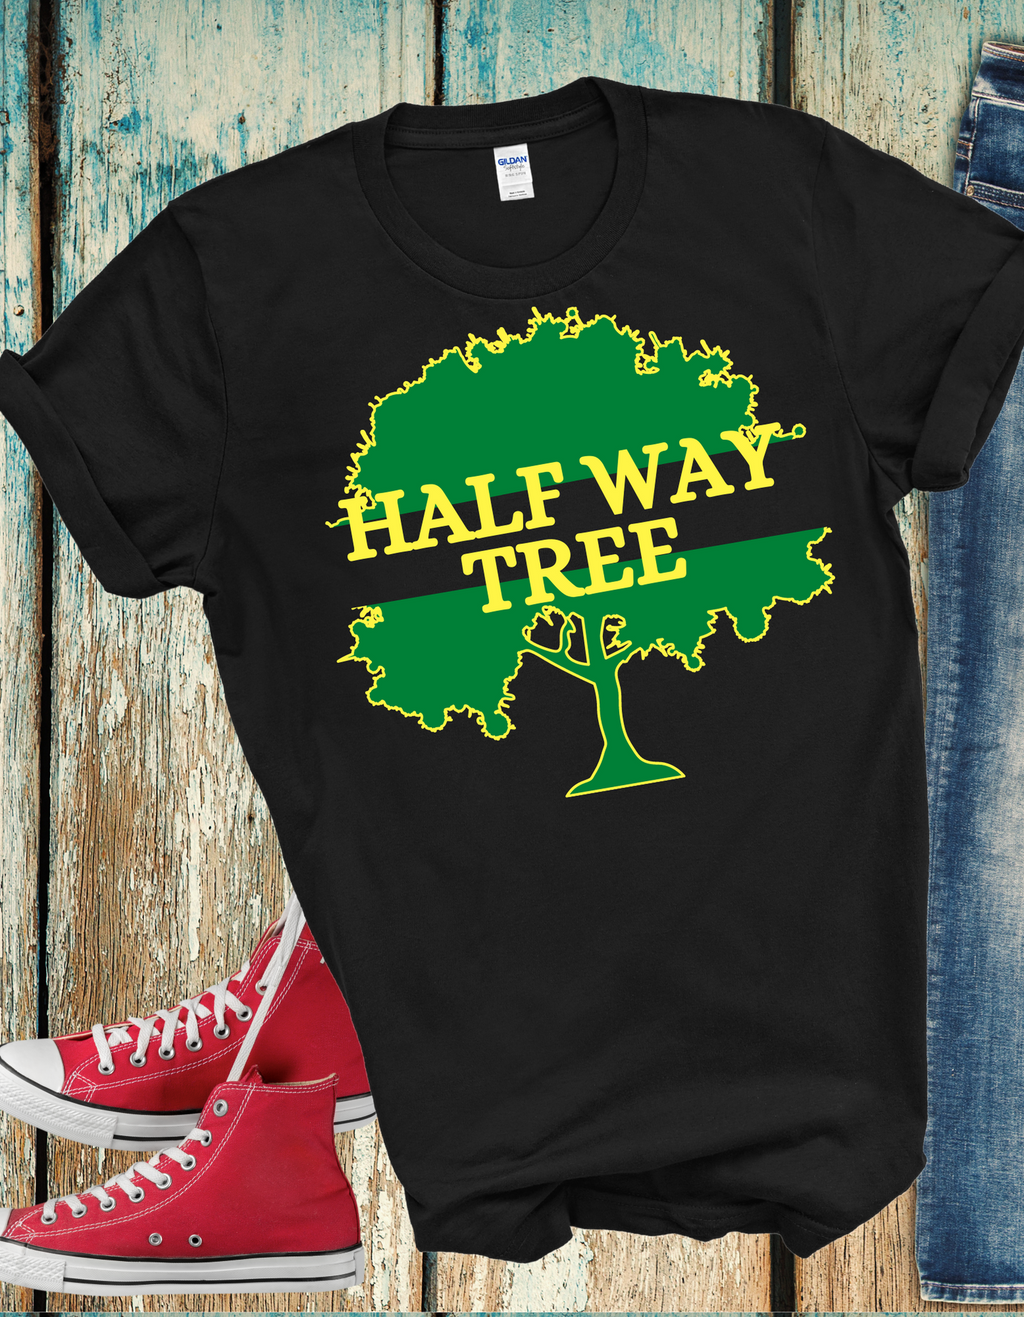 Half Way Tree tees.